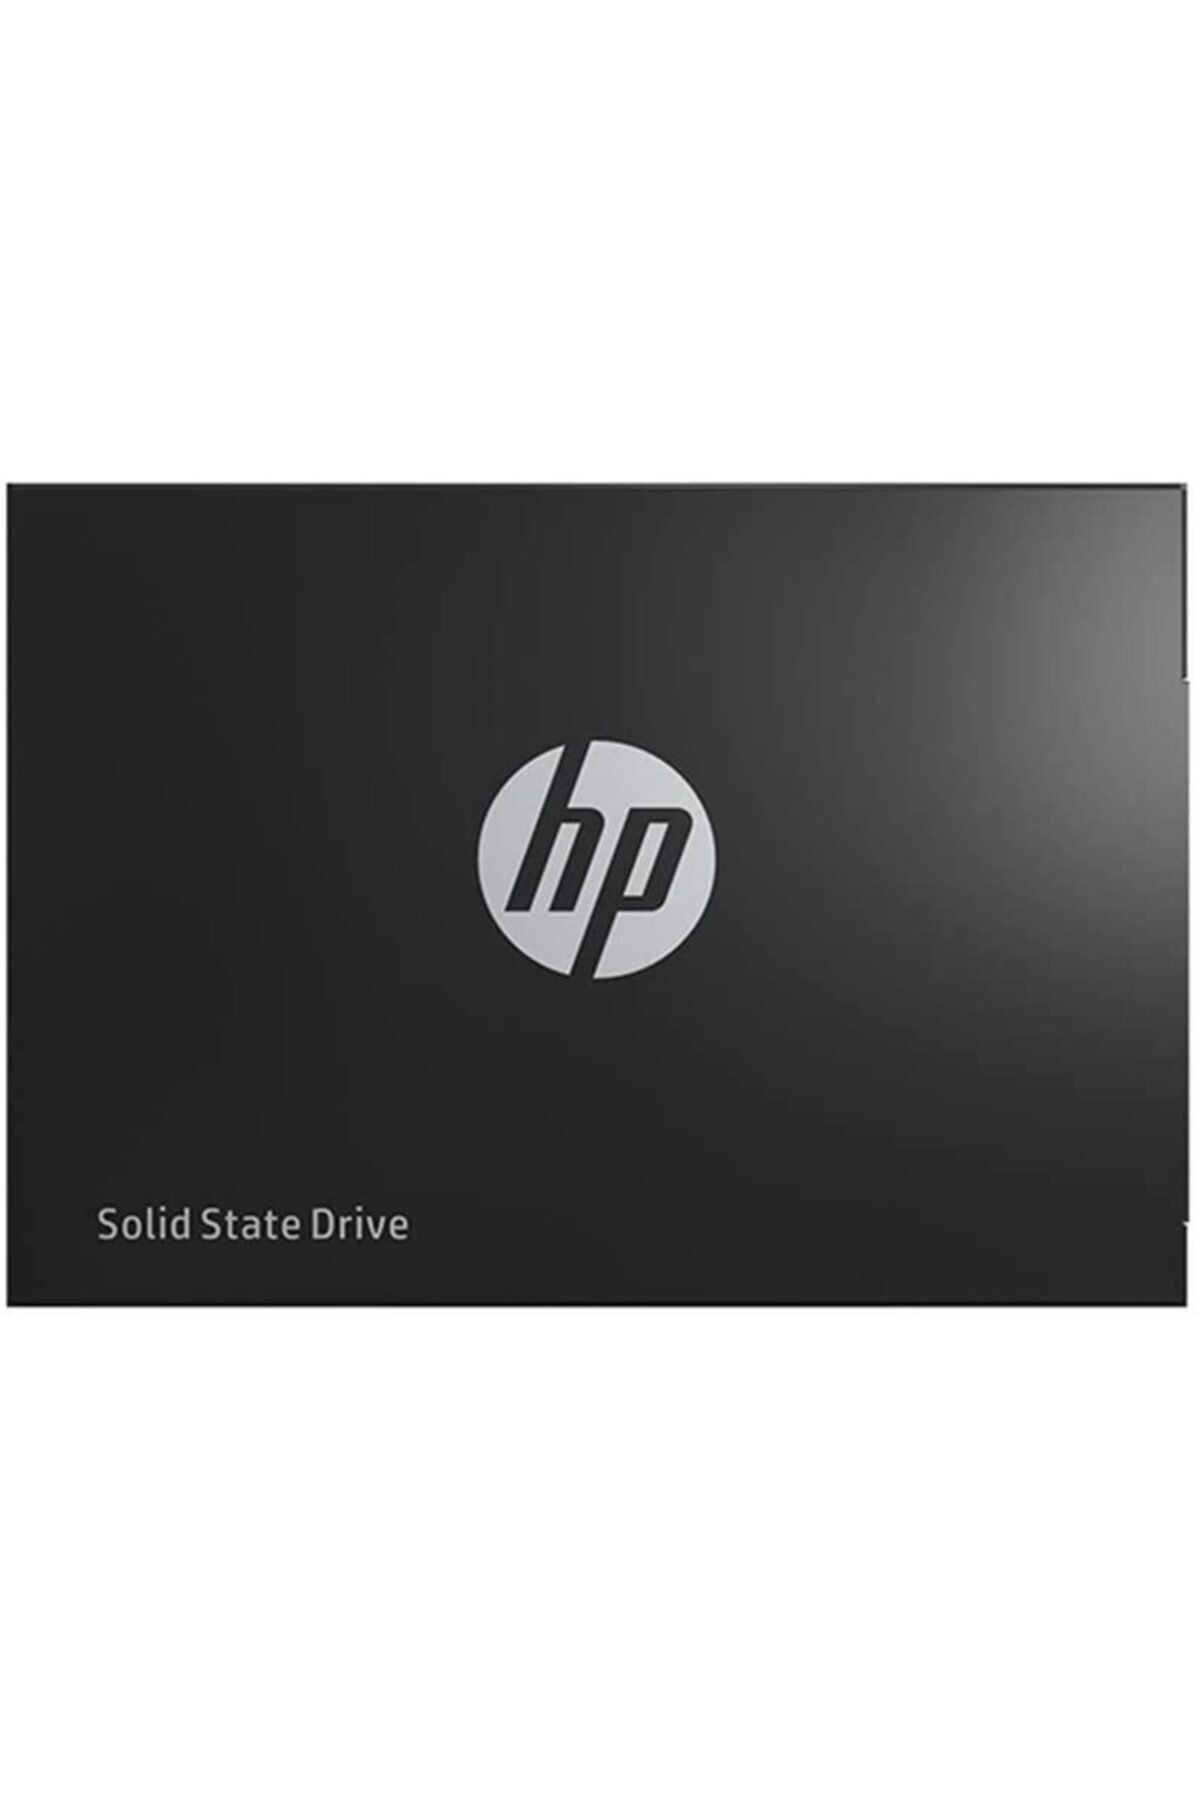 HP S700 6mc15aa 2.5" 1 Tb Sata 3 Ssd